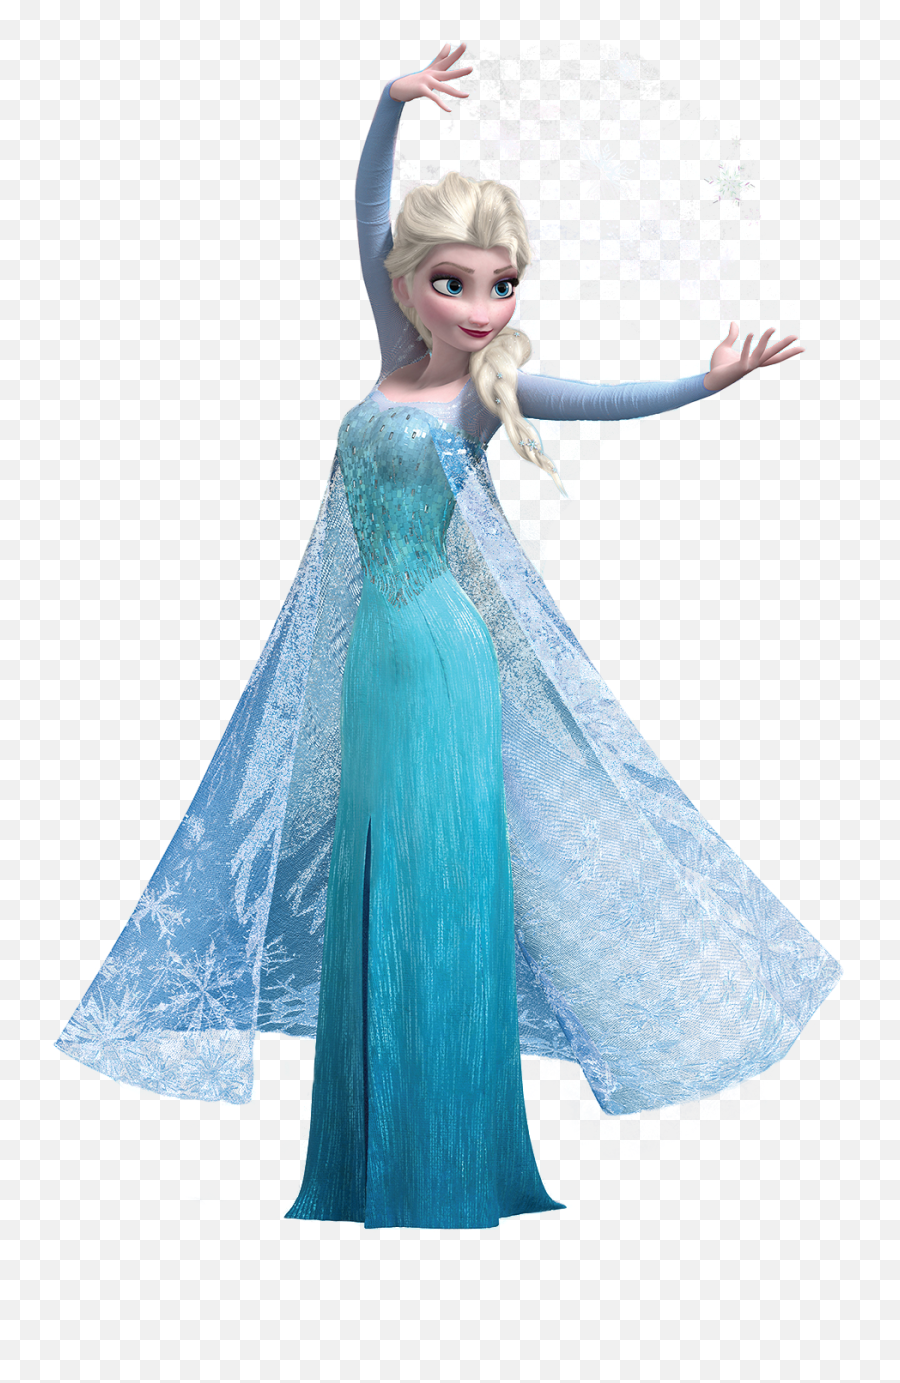 Frozen Hollow Earth Wikia - Elsa Frozen Png Emoji,Elsa Ice Powers Emotions